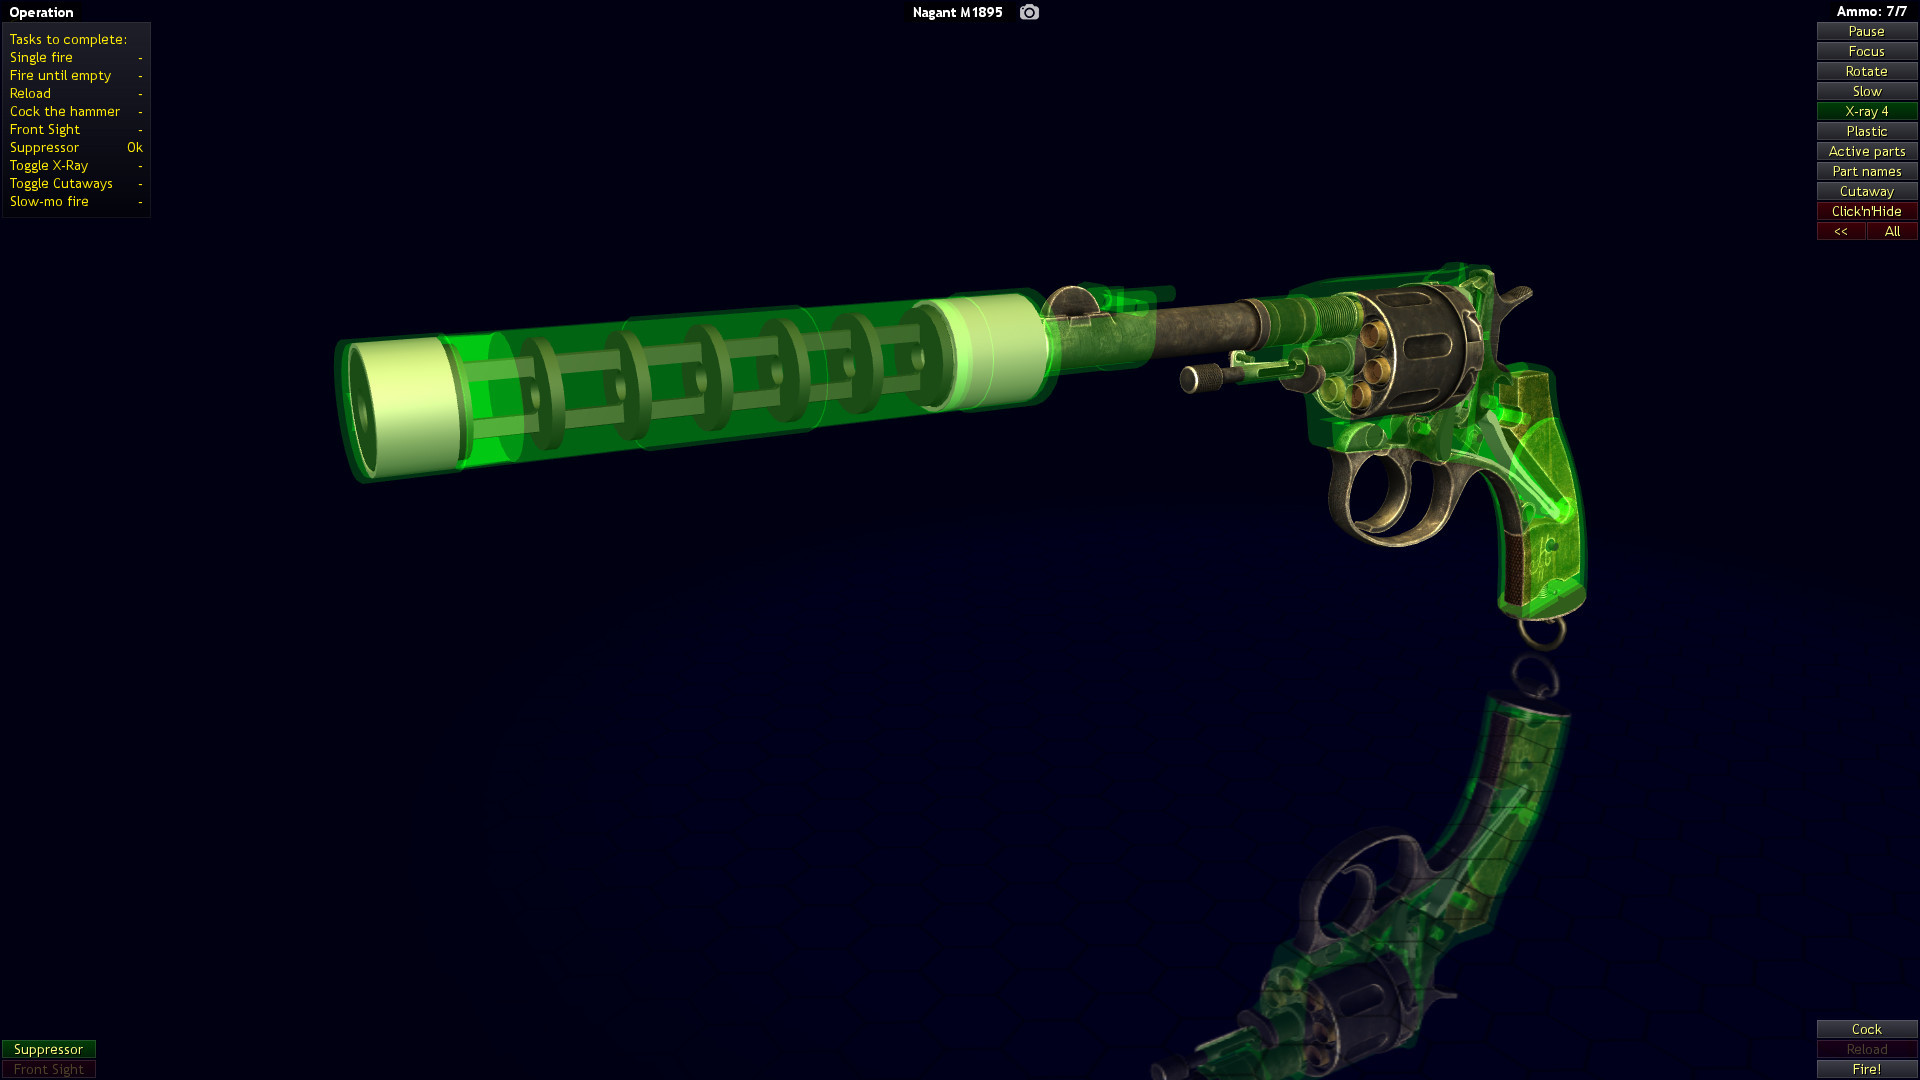 World of Guns VR: Suppressed Guns Pack #1 Featured Screenshot #1